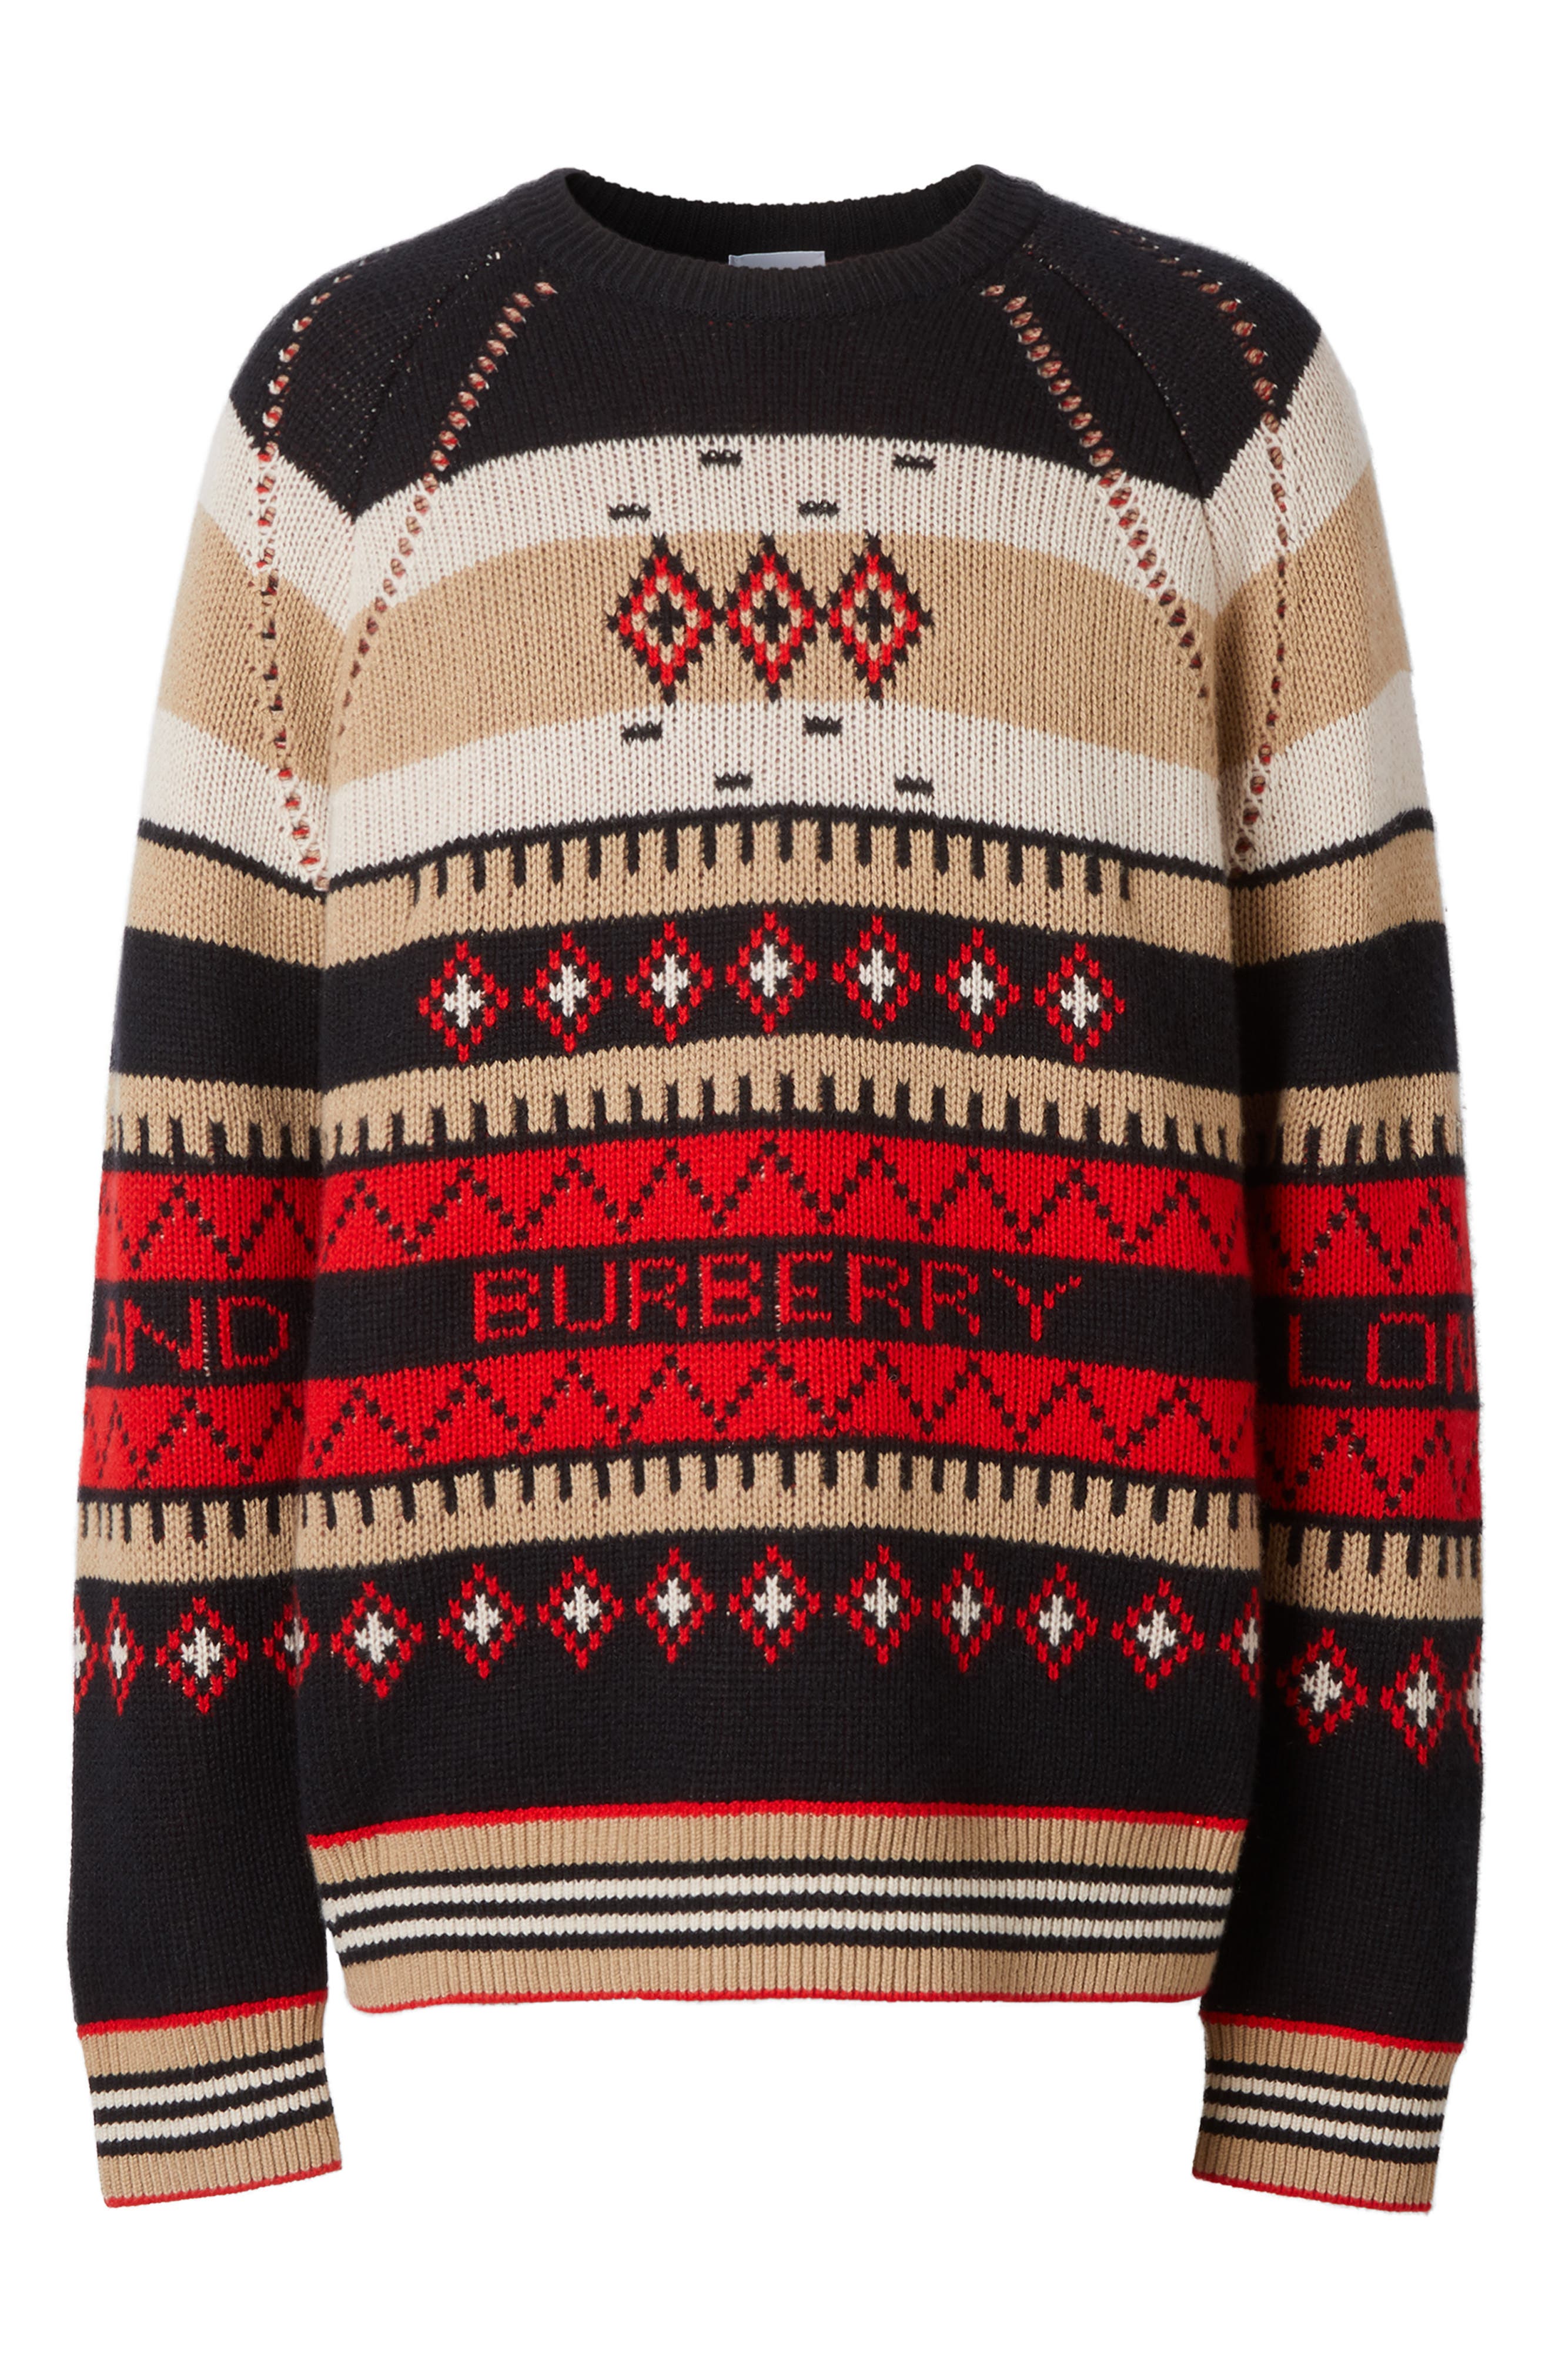 Burberry Nicholas Cashmere Sweater 